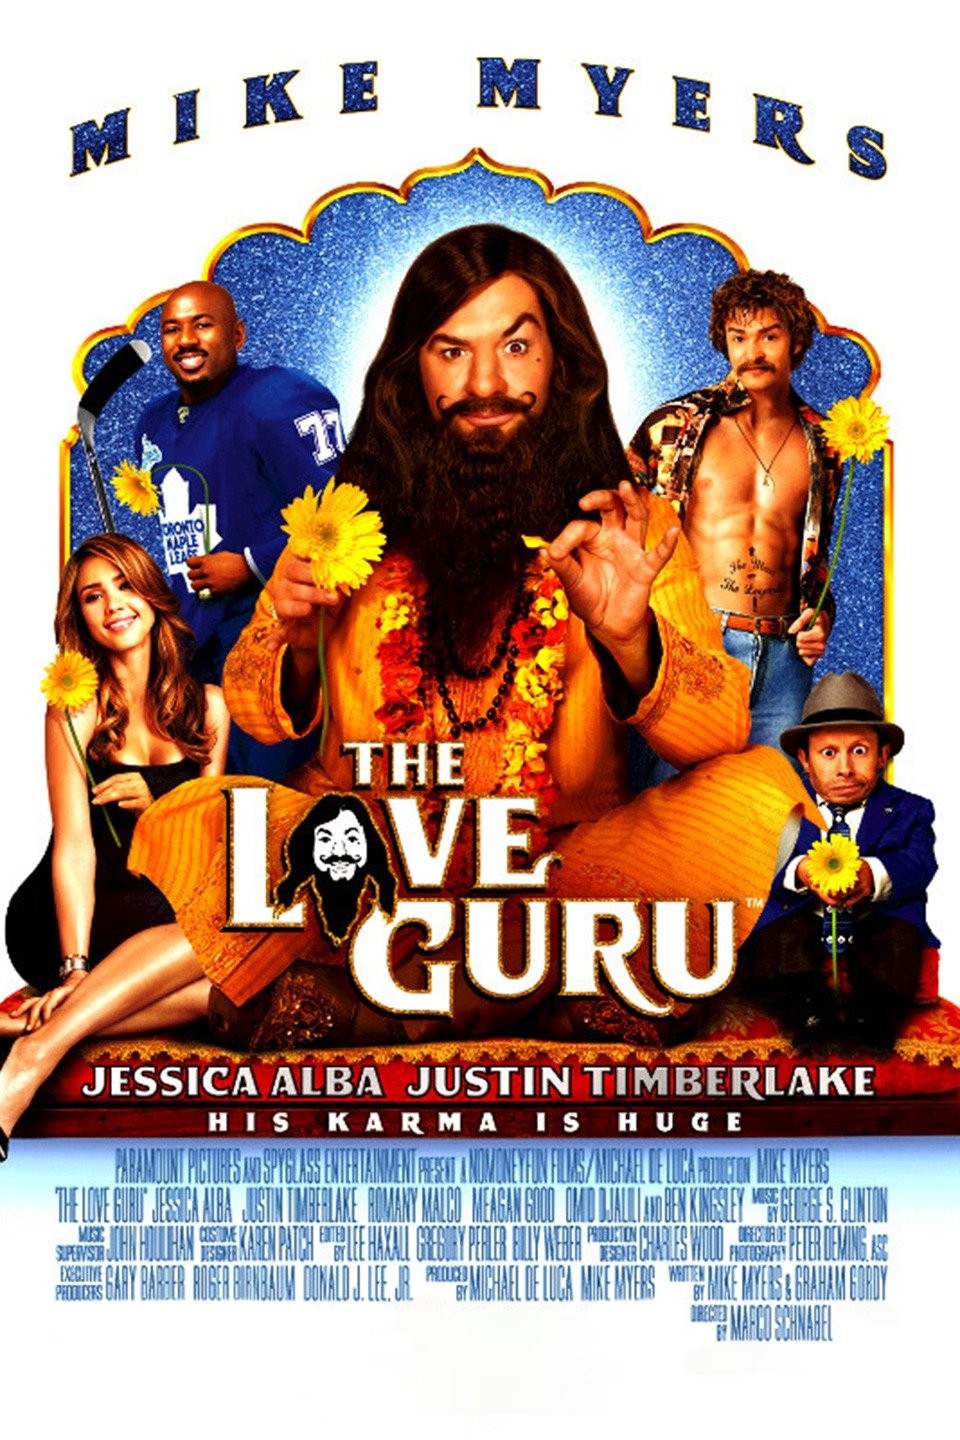 Guru - Where to Watch and Stream Online –